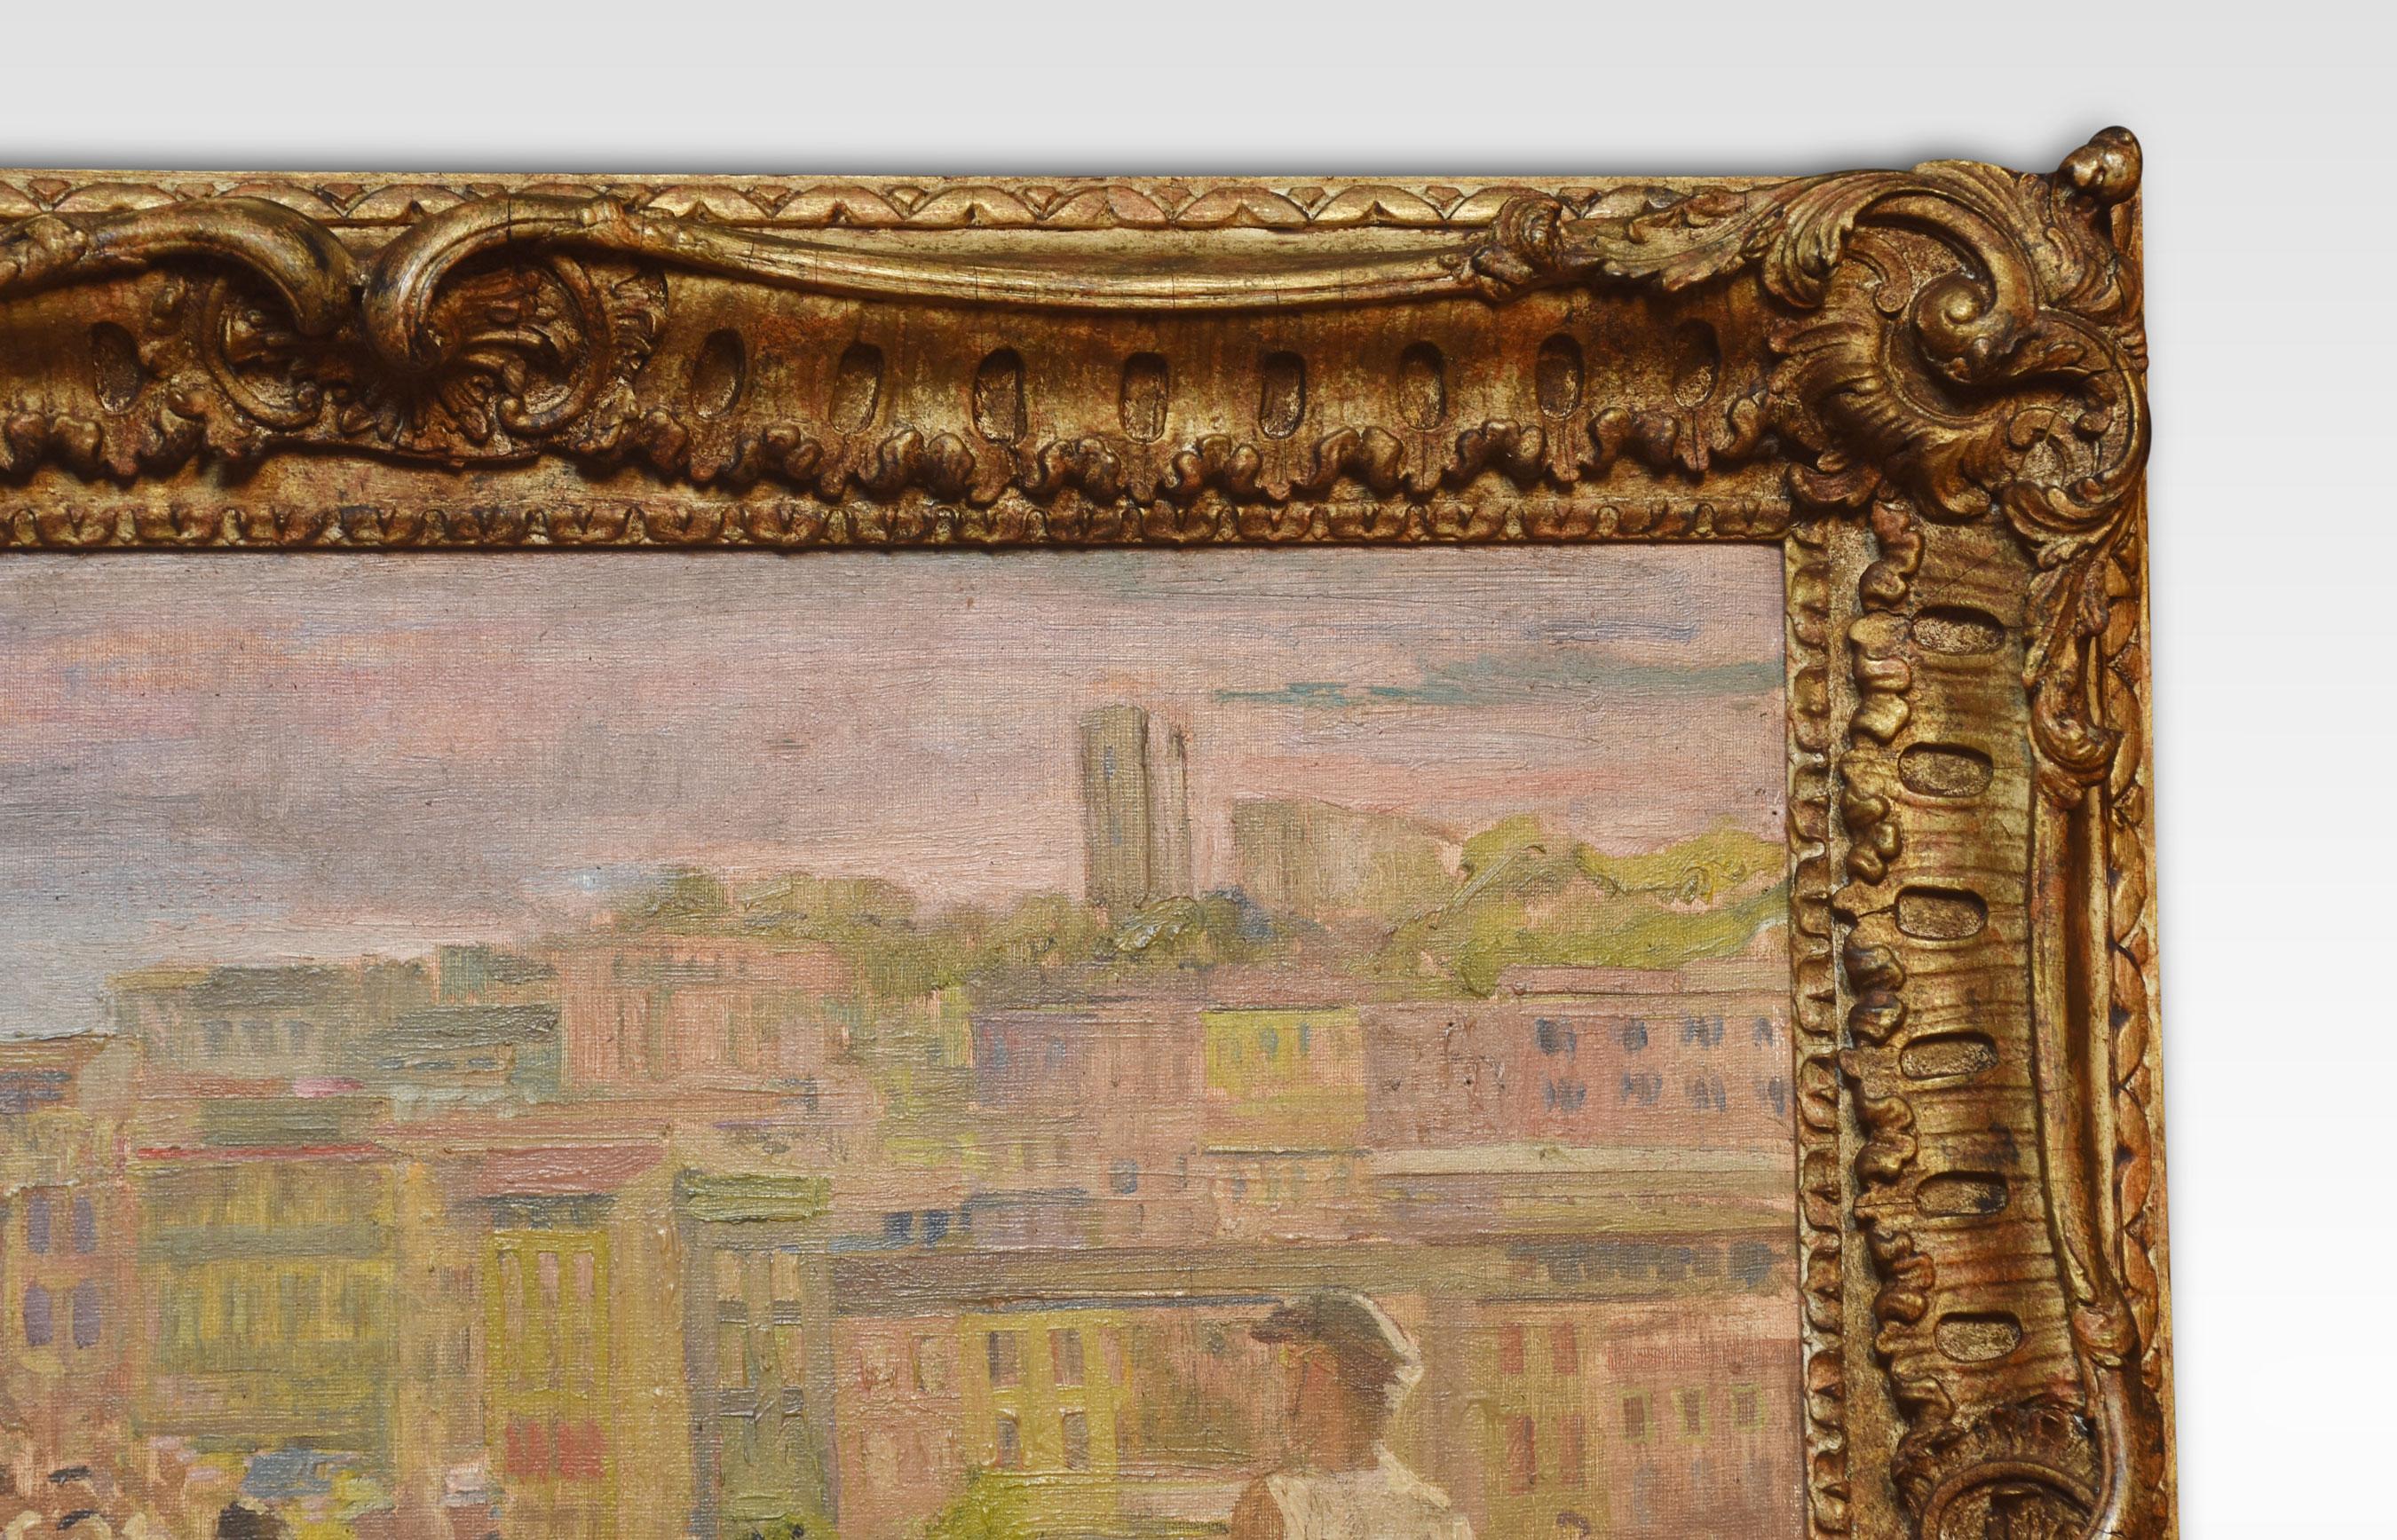 Öl auf Tafel mit Figuren in einer italienischen Stadt, in einem Rahmen aus Goldholz, unten links gestempelt.
Abmessungen
Höhe 26,5 Zoll
Breite 30 Zoll
Tiefe 3 Zoll.